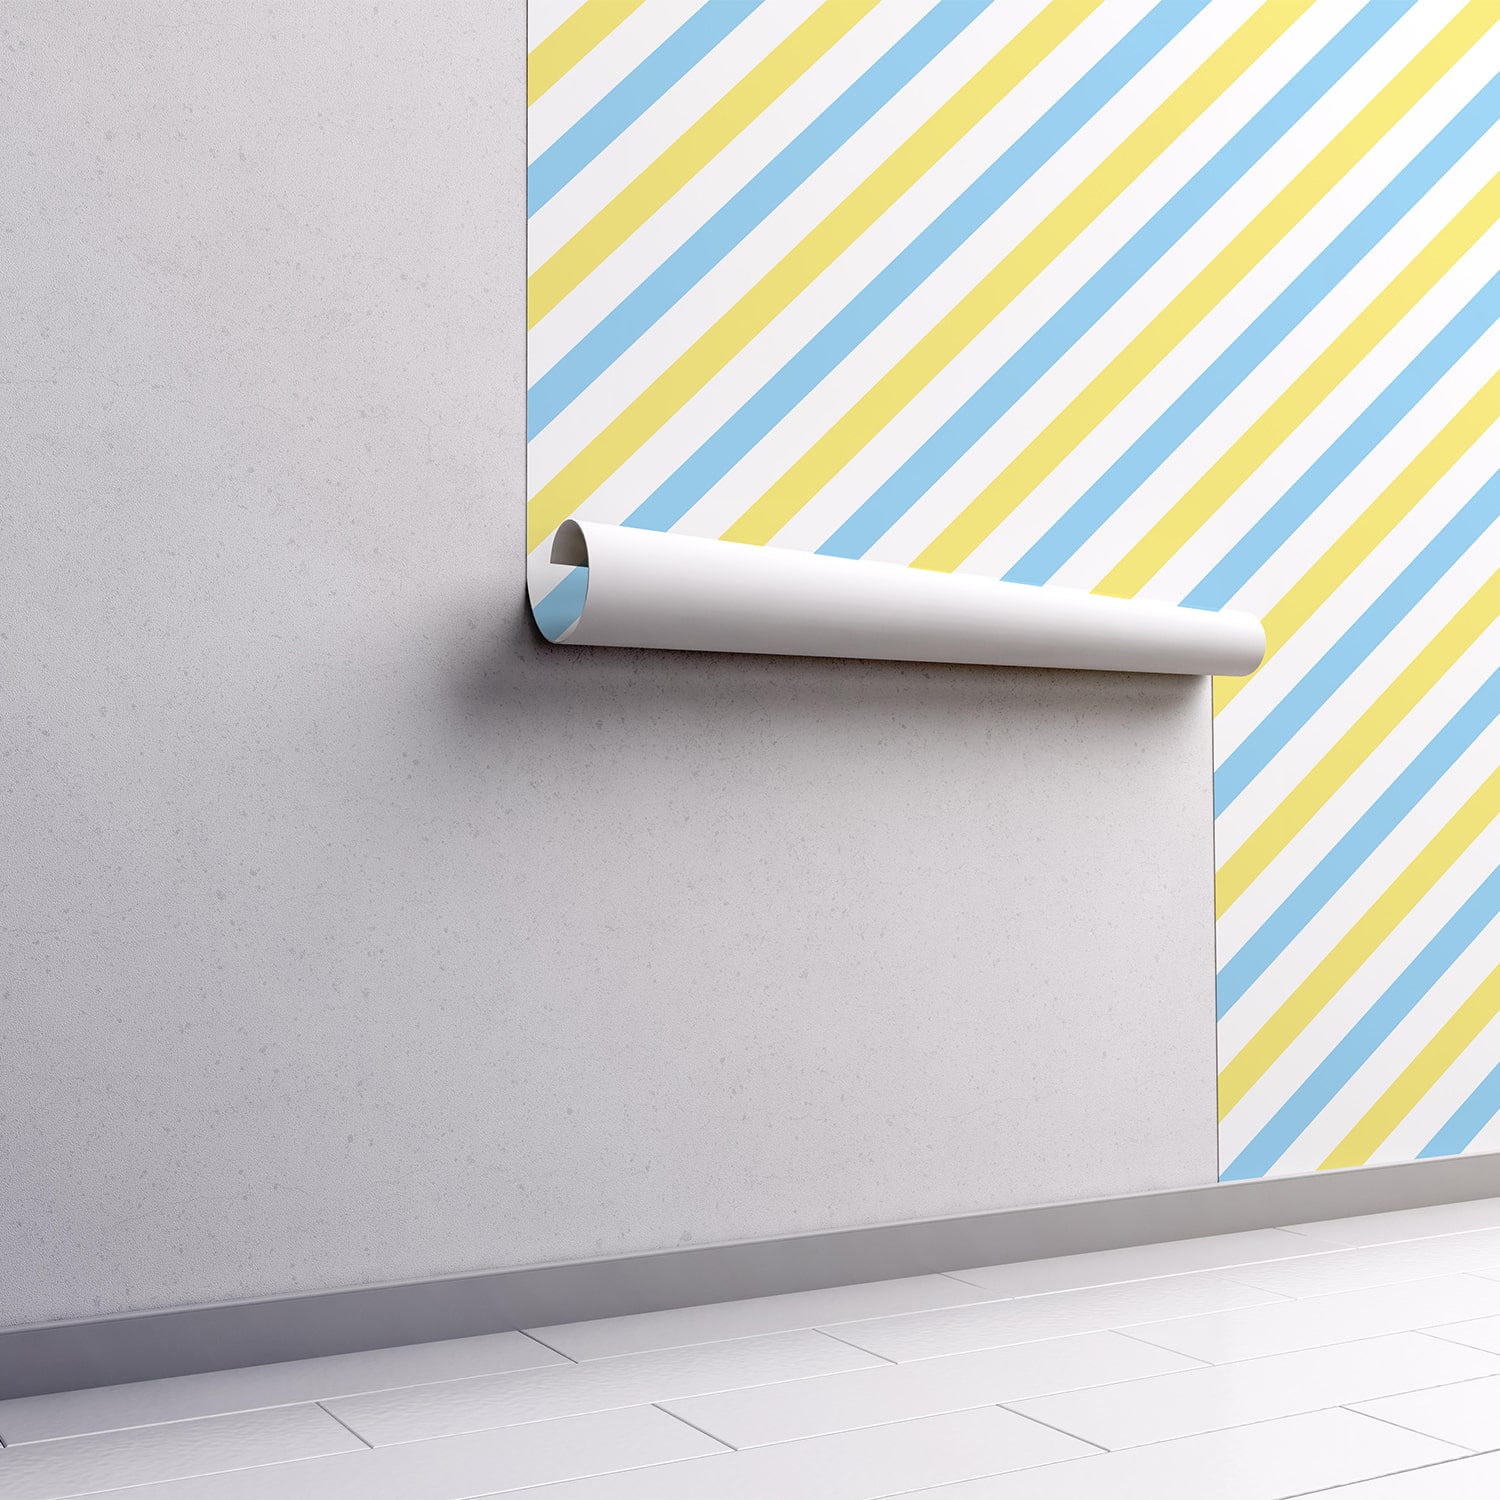 PP52-mur.rouleau-papier-peint-adhesif-decoratif-revetement-vinyle-rayures-diagonales-bleu-et-jaune-renovation-meuble-mur-min